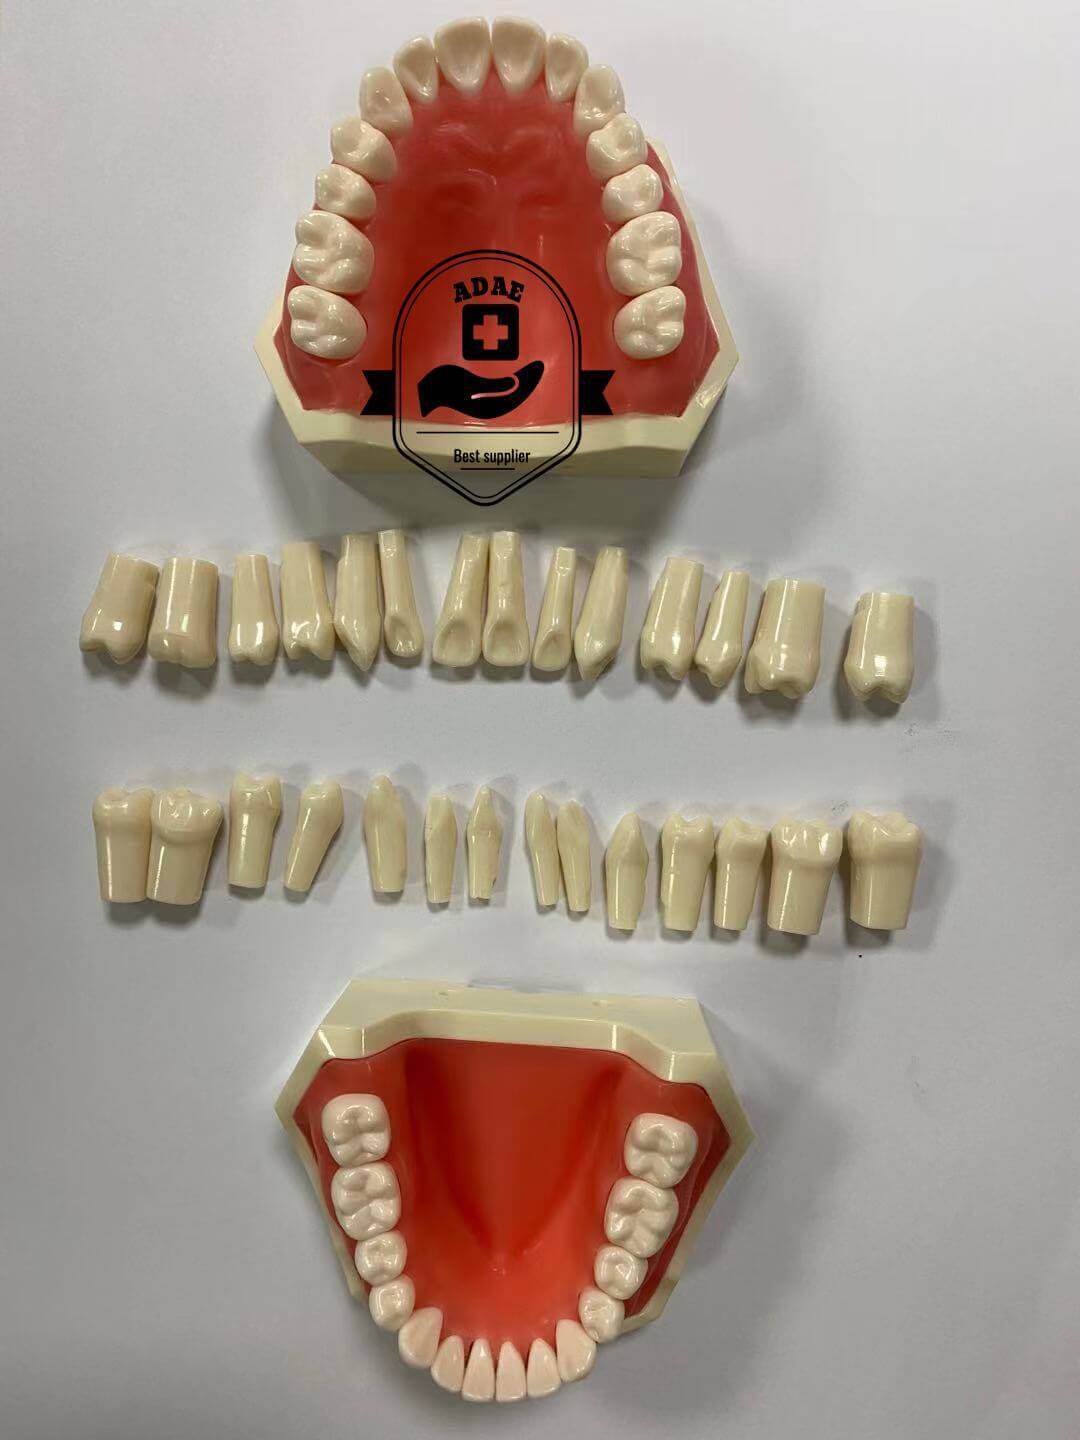 ADAE dental phantom head with magnetic jaws and teeth - ADAE Dental Online Store